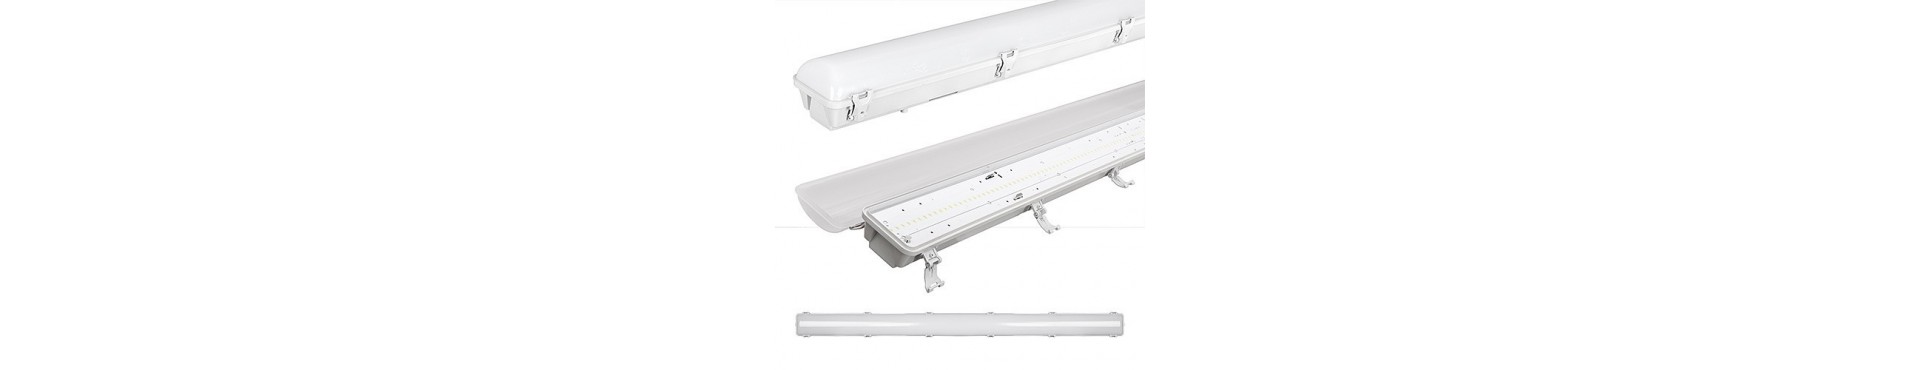 LED armatur - Stort udvalg af billige LED lysarmaturer